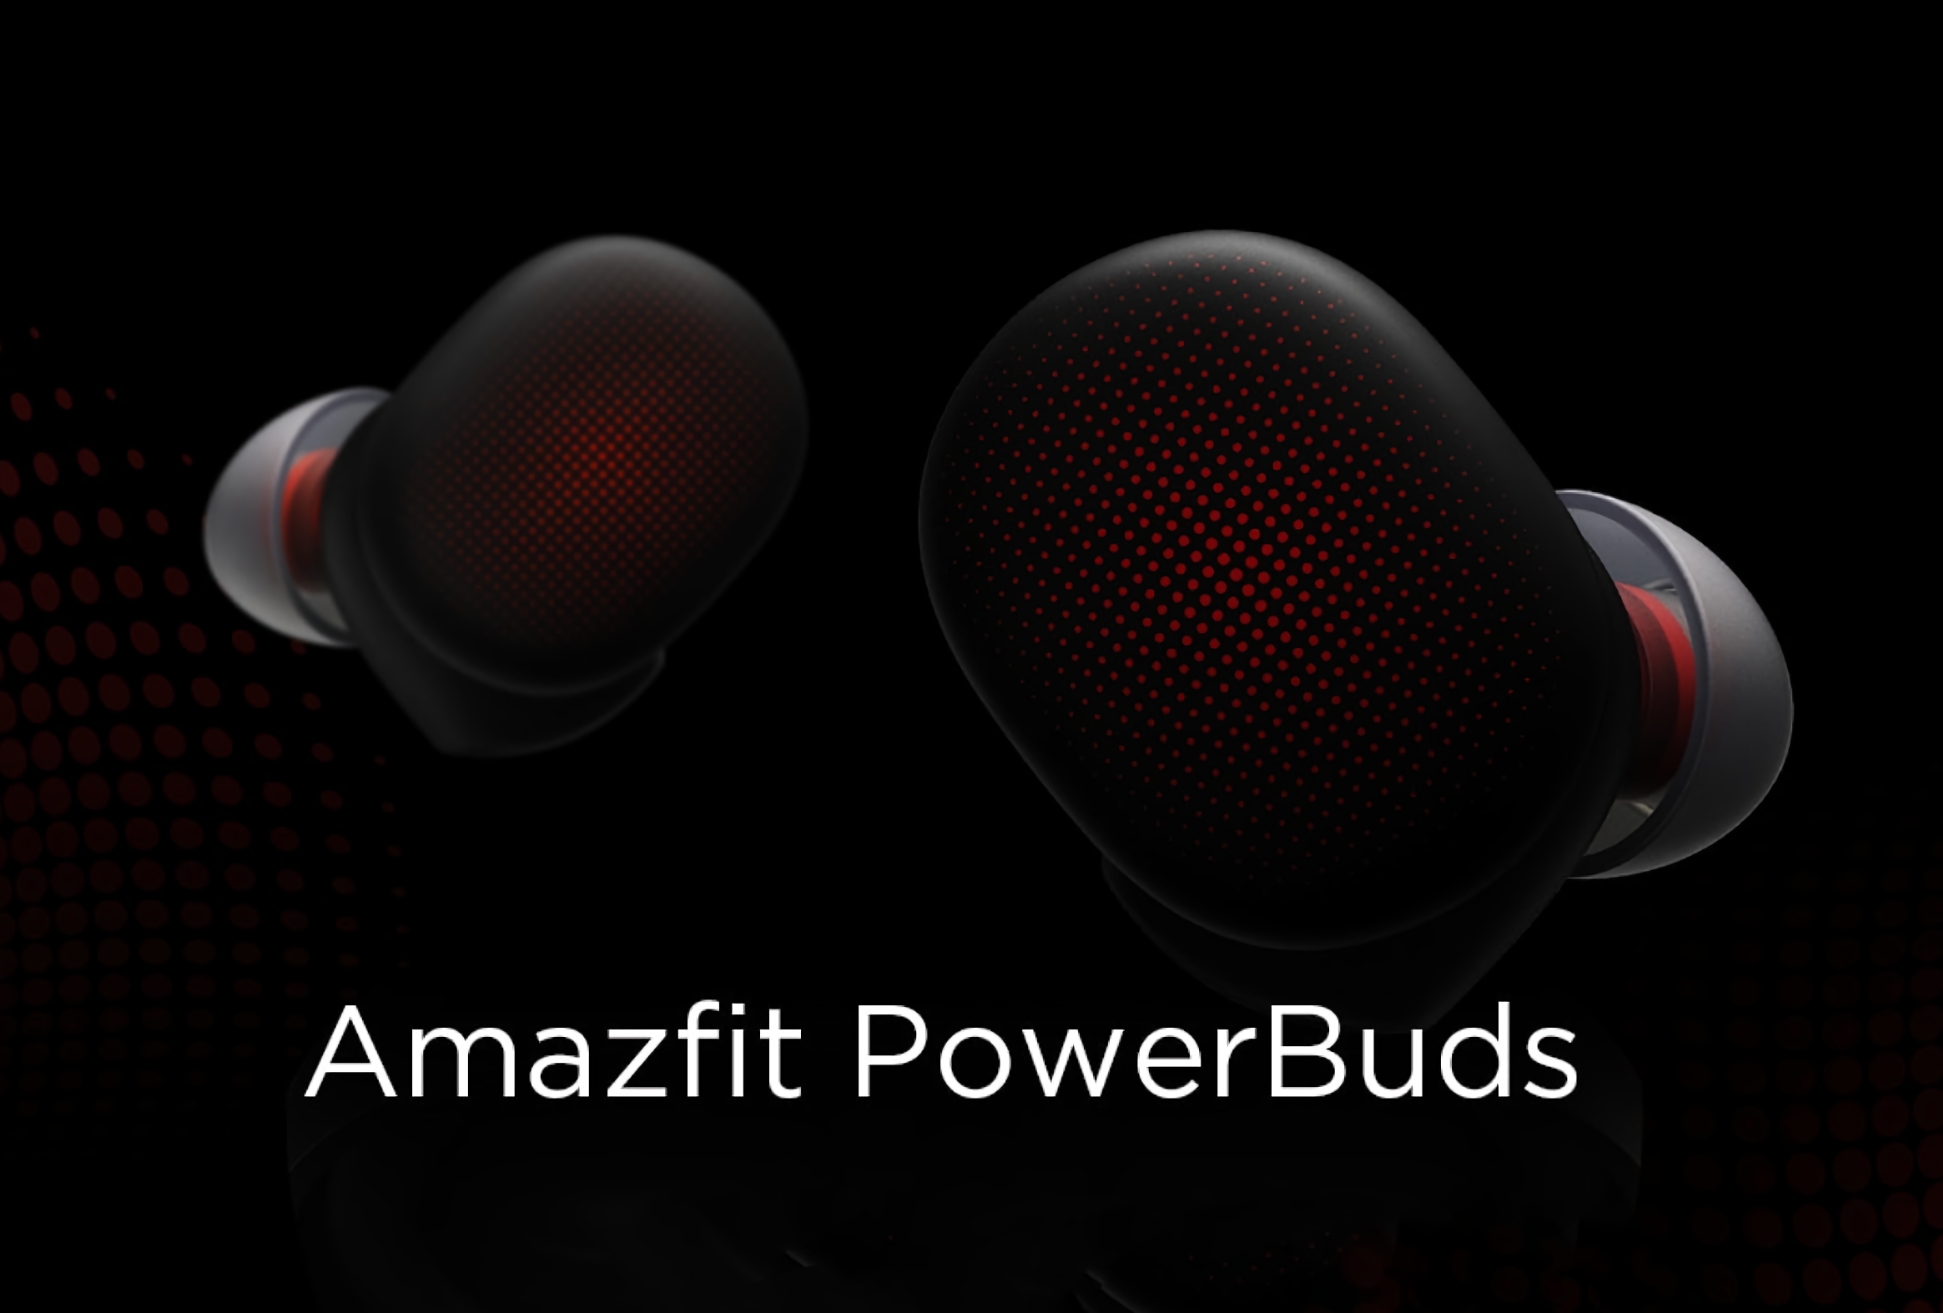 Amazfit PowerBuds: TWS-Ohrhörer mit Herzfrequenzmessung und IP55-Schutz für 43 US-Dollar